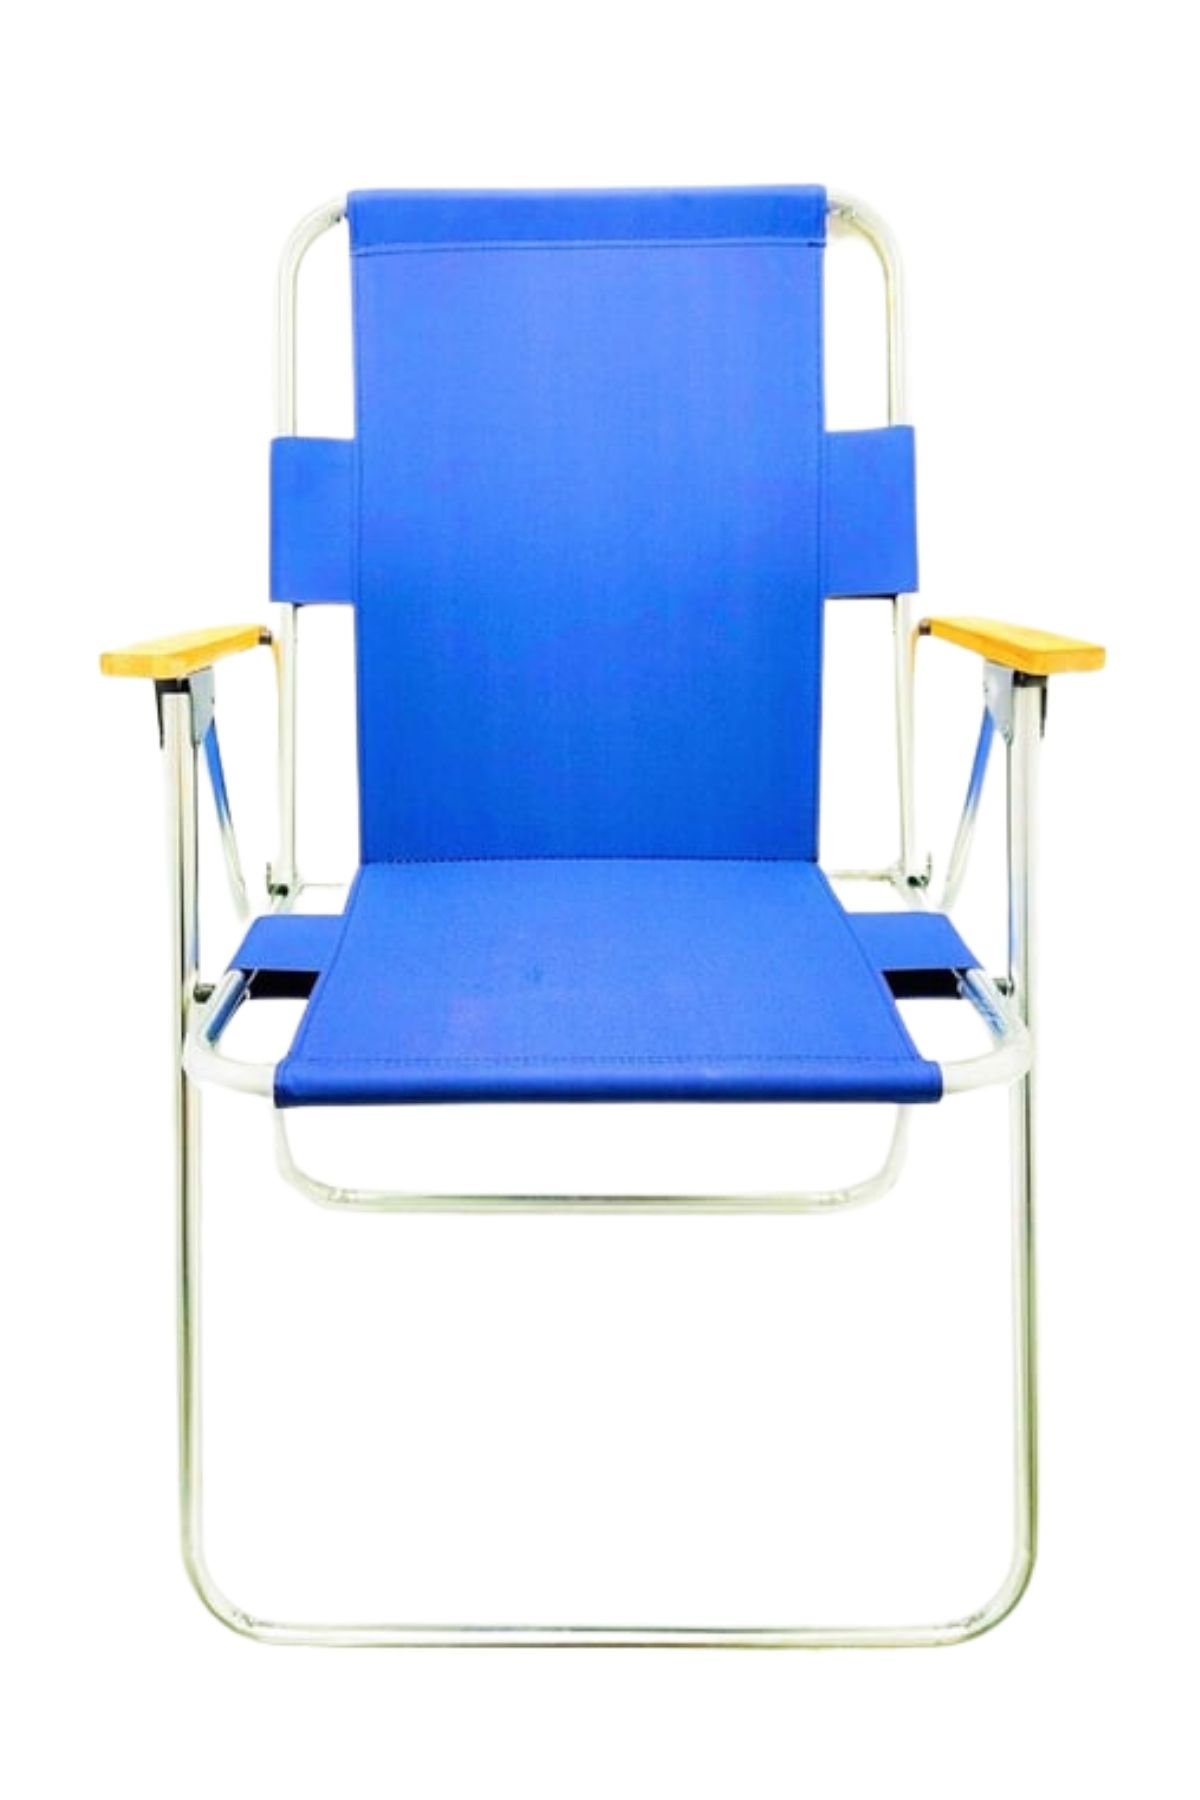 Tedarikcenter Ahşap Kollu Kamp Sandalyesi Katlanır Kamp Sandalyesi Metal Ayaklı Sandalye - Mavi